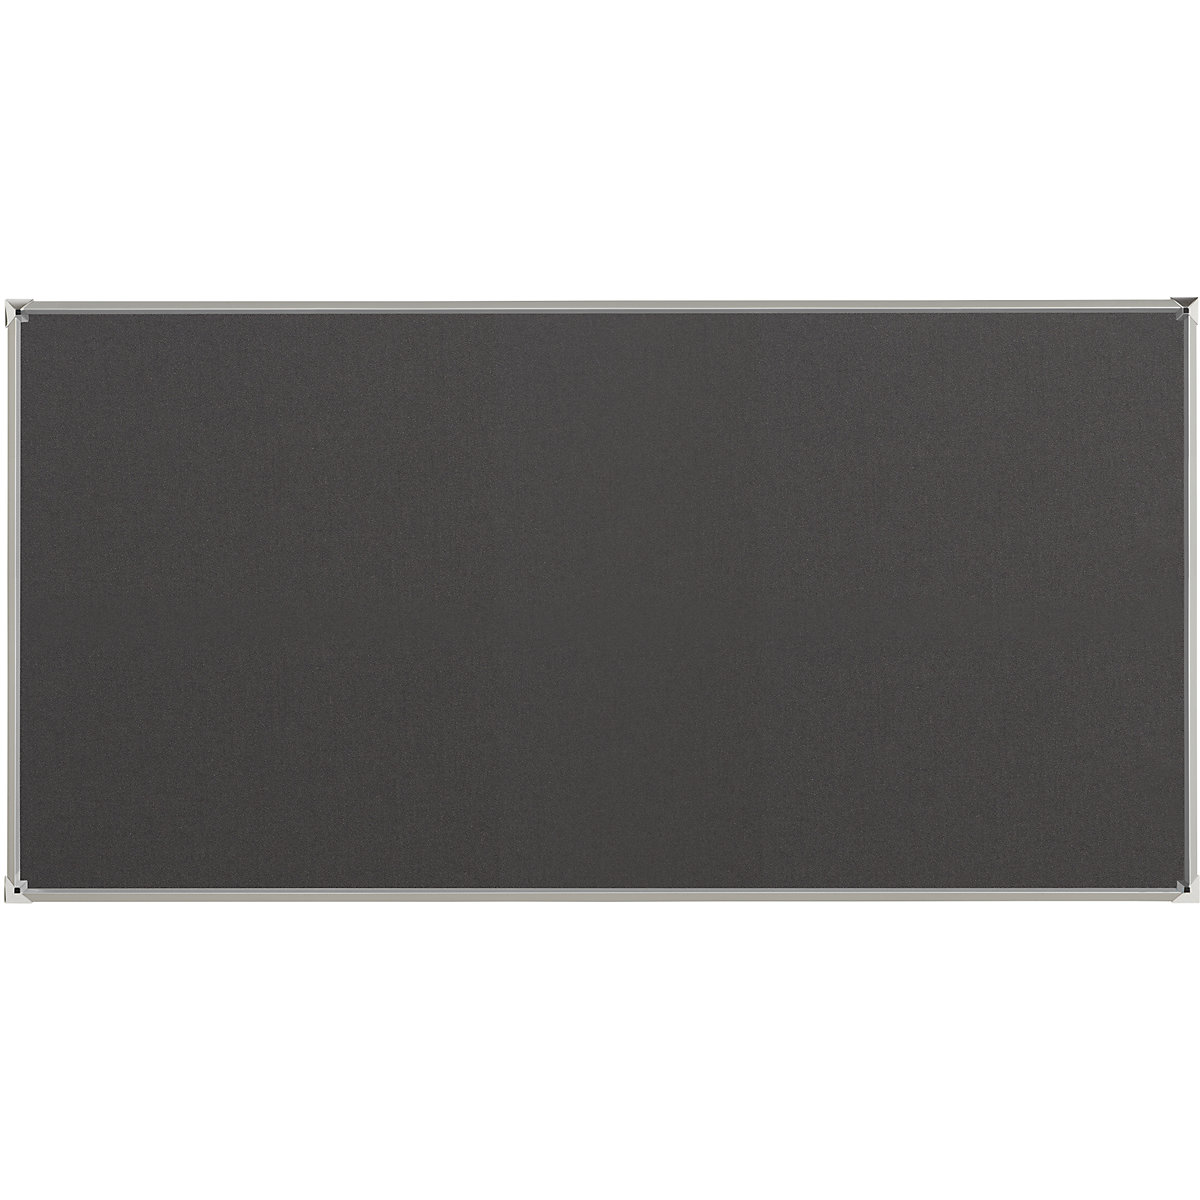 Oglasna ploča s aluminijskim okvirom – eurokraft pro, presvlaka od tkanine, u sivoj boji, ŠxV 2000 x 1000 mm-4